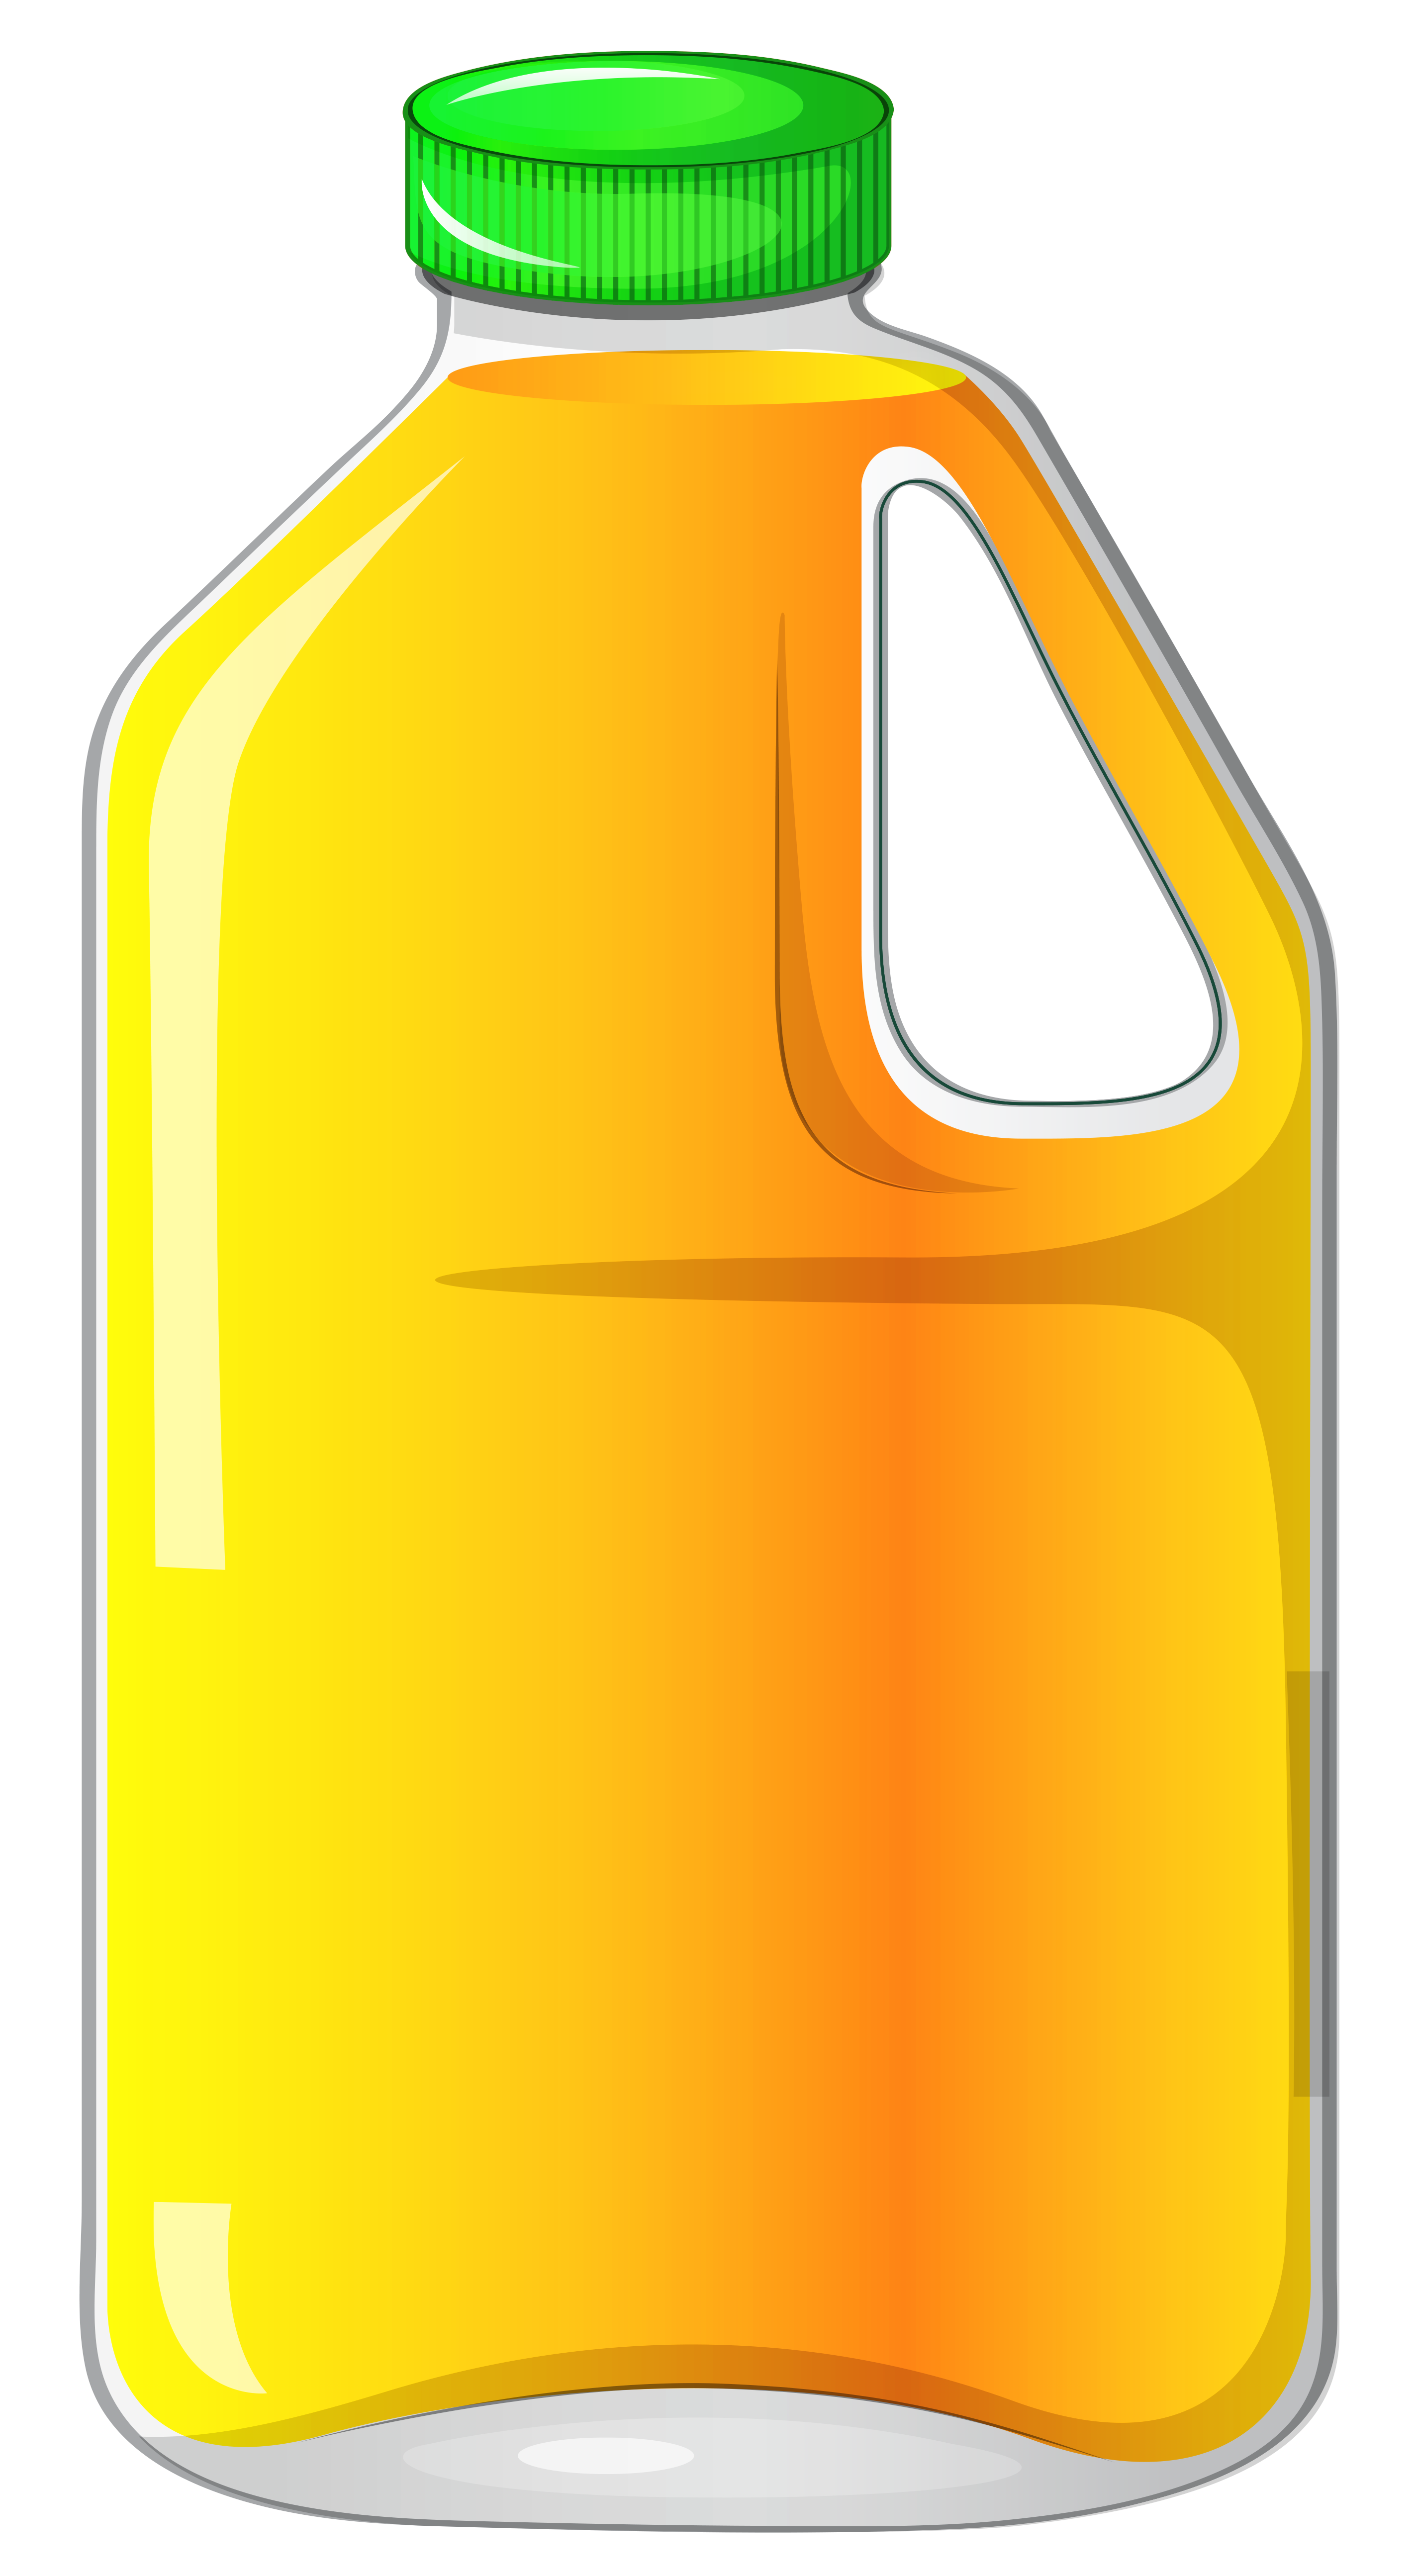 Juice clipart jug, Juice jug Transparent FREE for download on